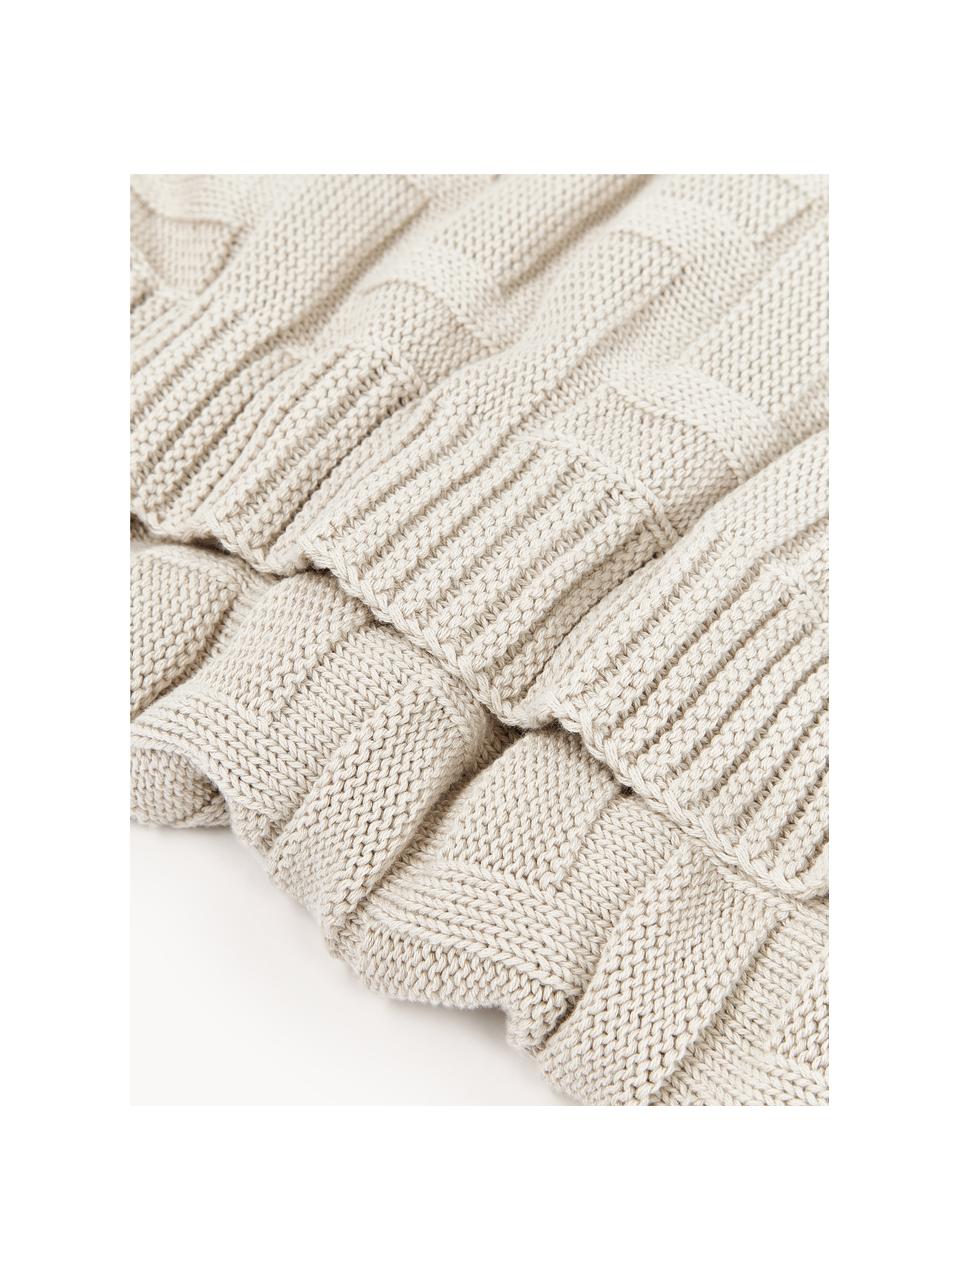 Couverture en coton tricoté Gwen, 100% coton, Beige clair, larg. 130 x long. 170 cm